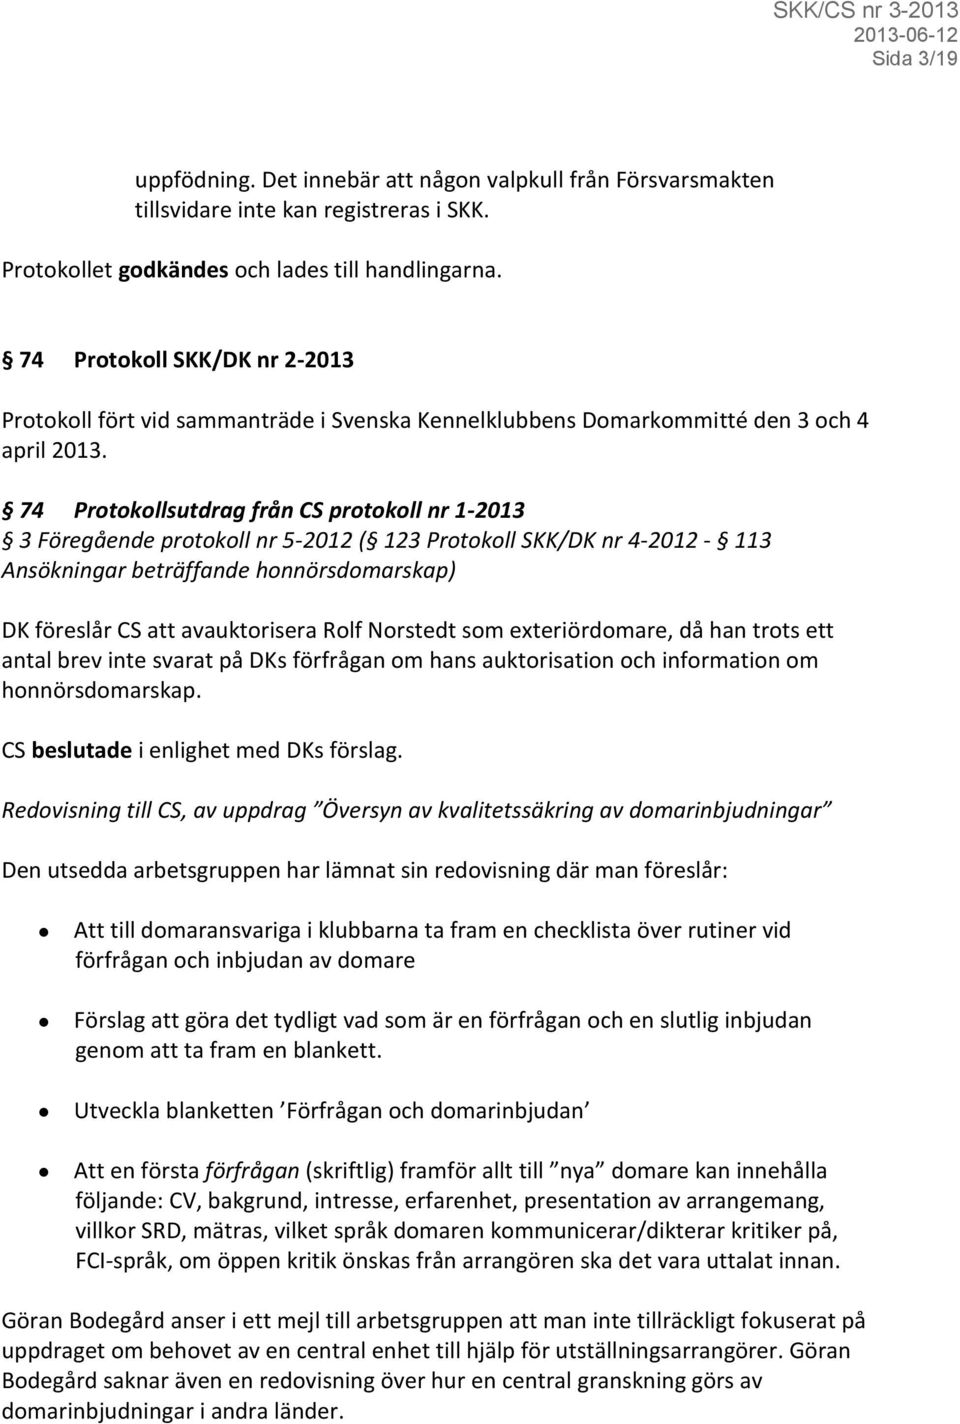 74 Protokollsutdrag från CS protokoll nr 1-2013 3 Föregående protokoll nr 5-2012 ( 123 Protokoll SKK/DK nr 4-2012 - 113 Ansökningar beträffande honnörsdomarskap) DK föreslår CS att avauktorisera Rolf